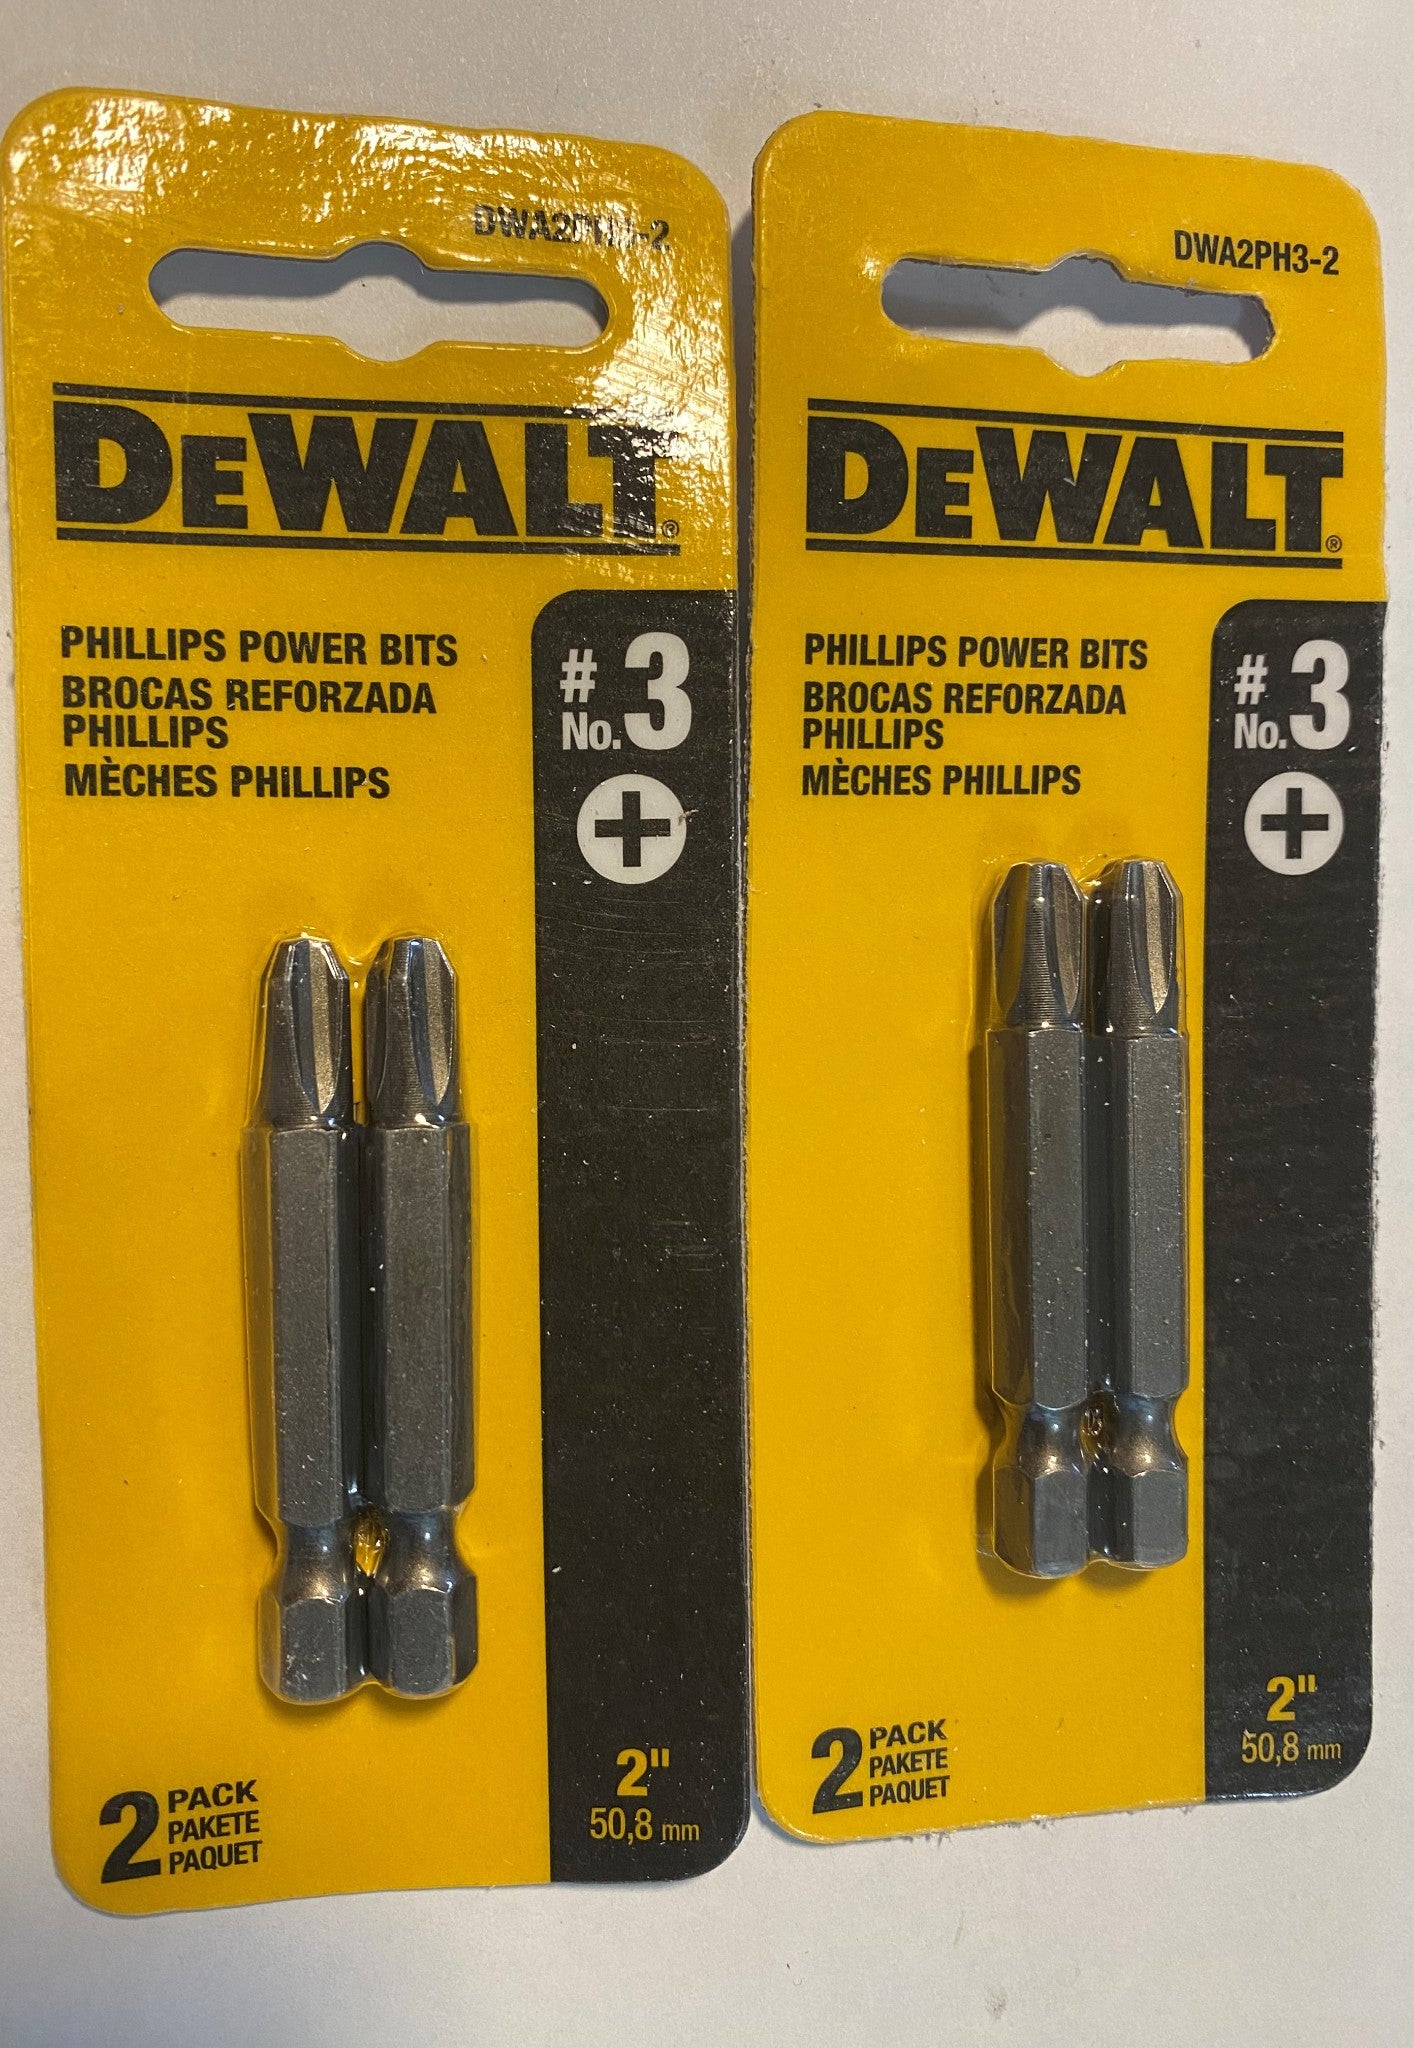 DeWALT DWA2PH3-2 Phillips Power Bit 2" #3 - 2-2 pack